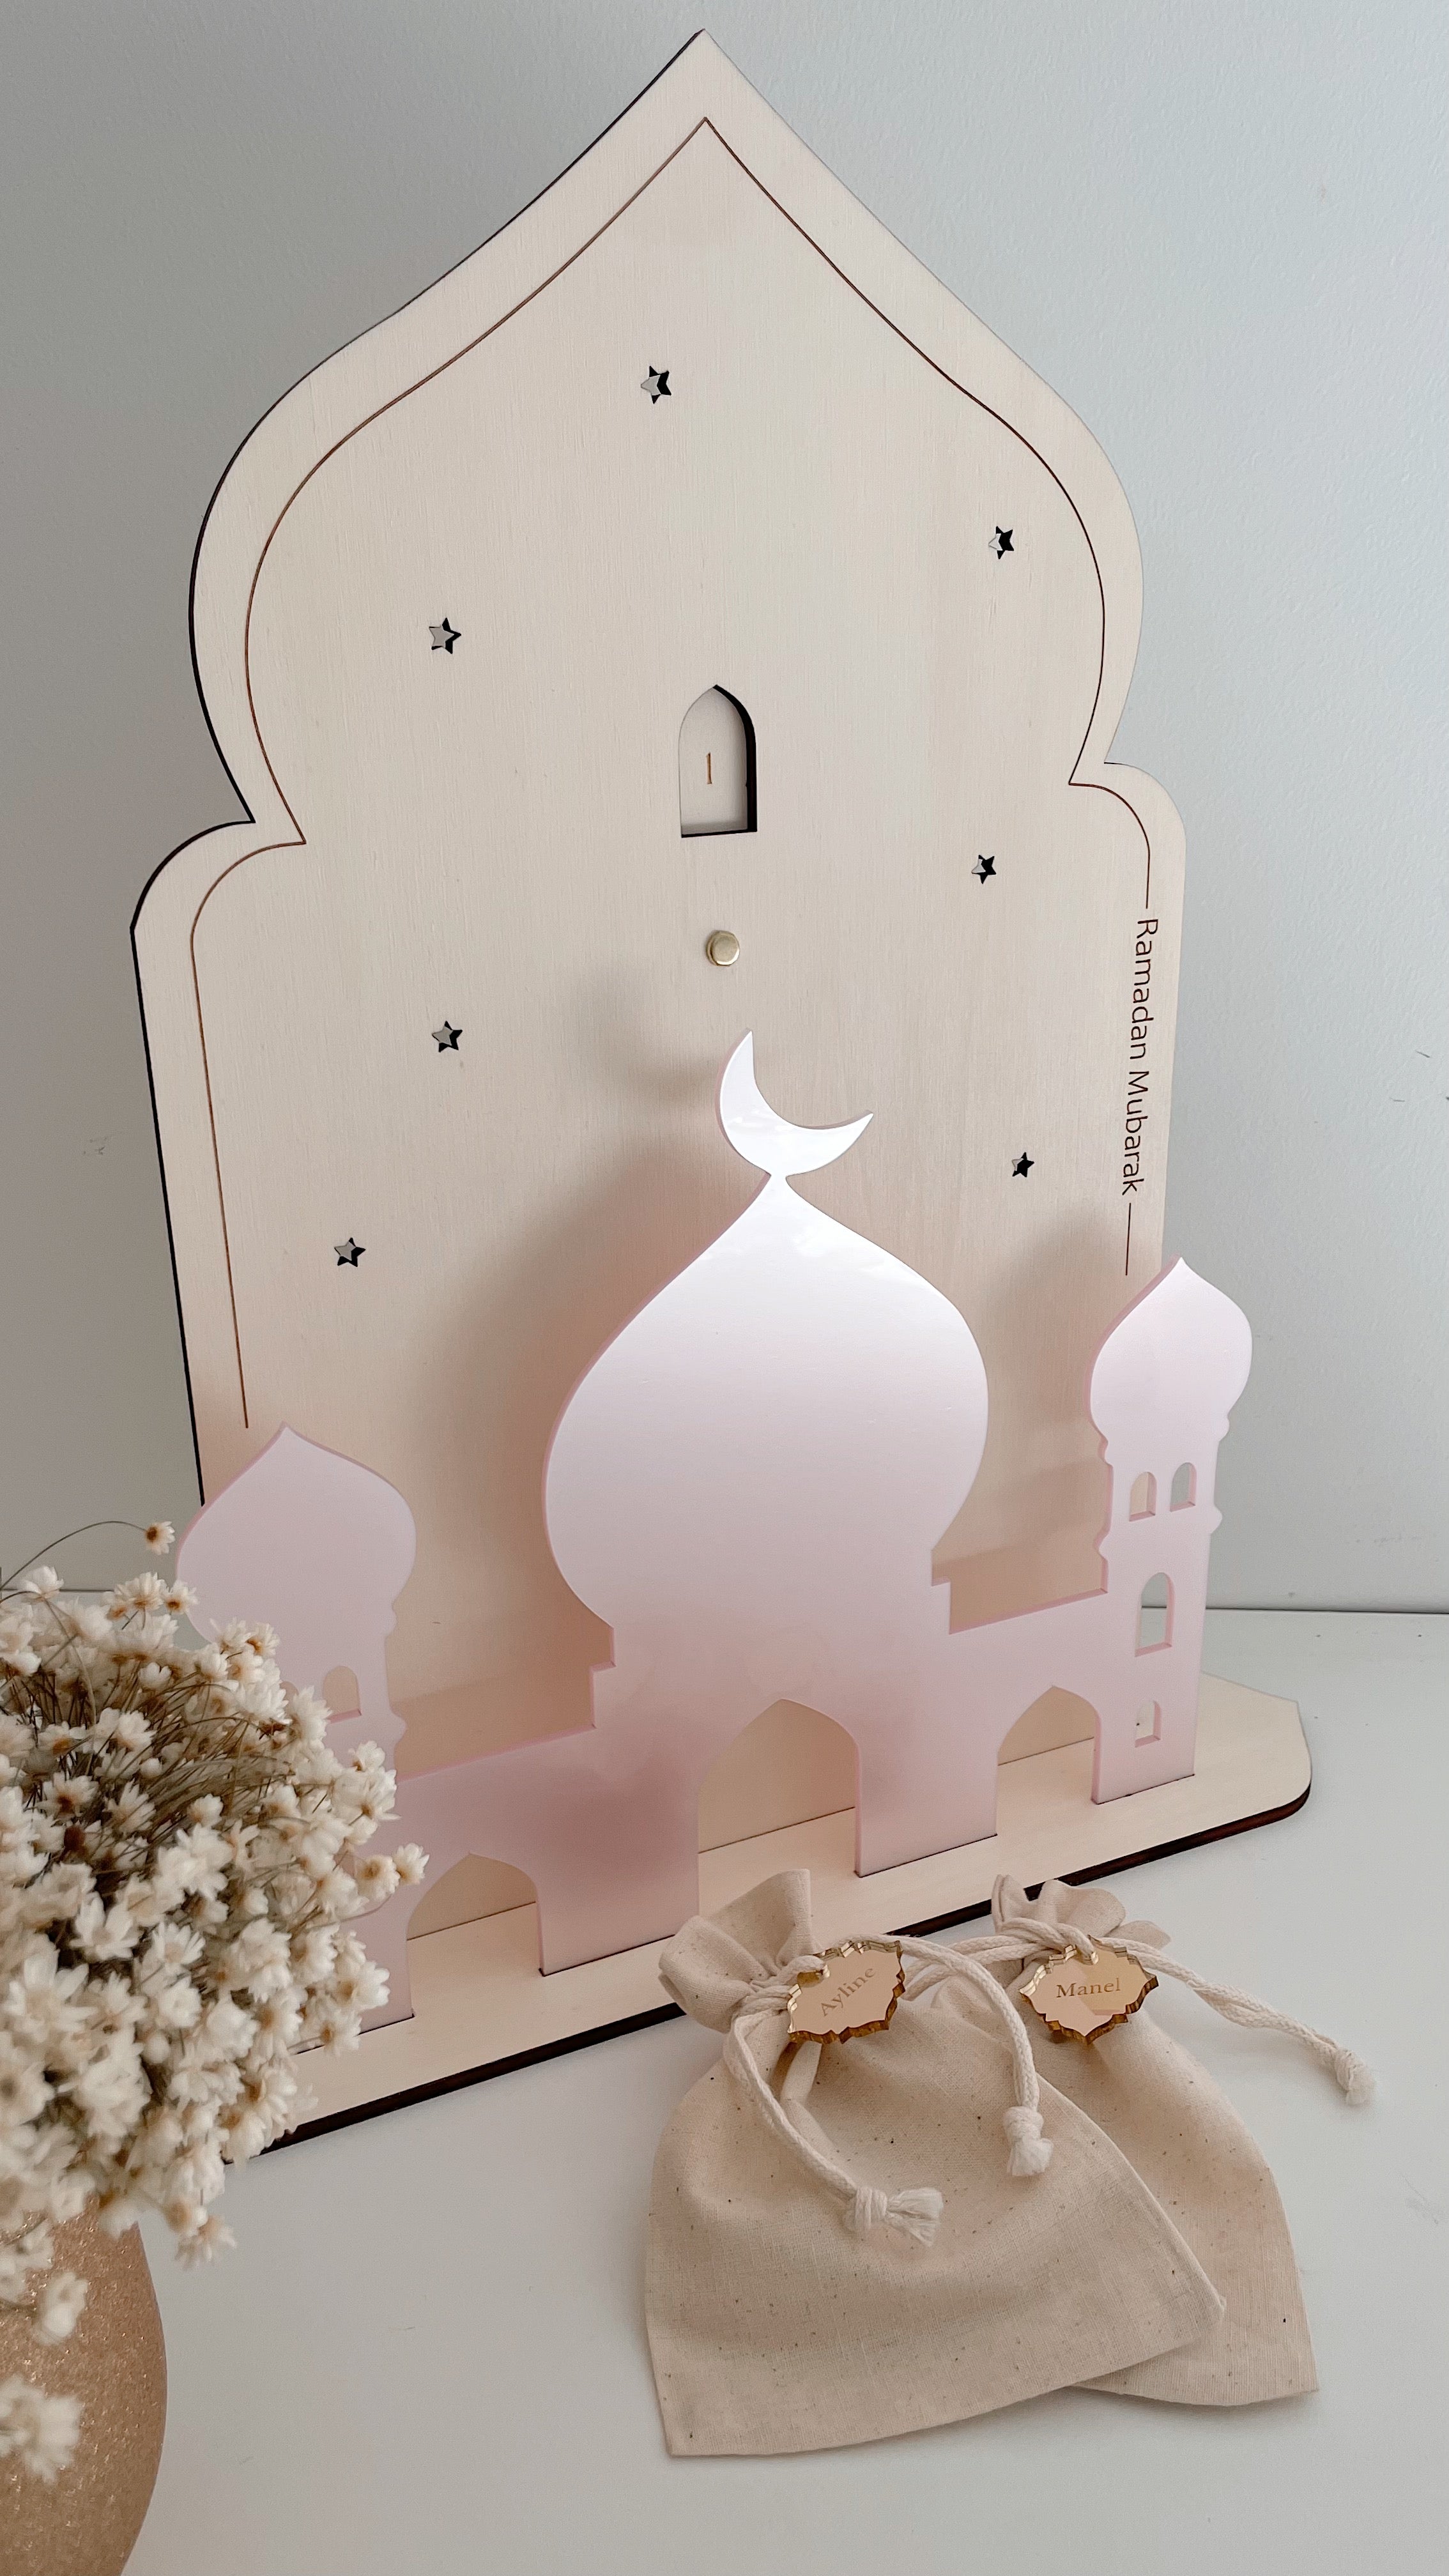 Calendrier Ramadan – Nuages et Paillettes